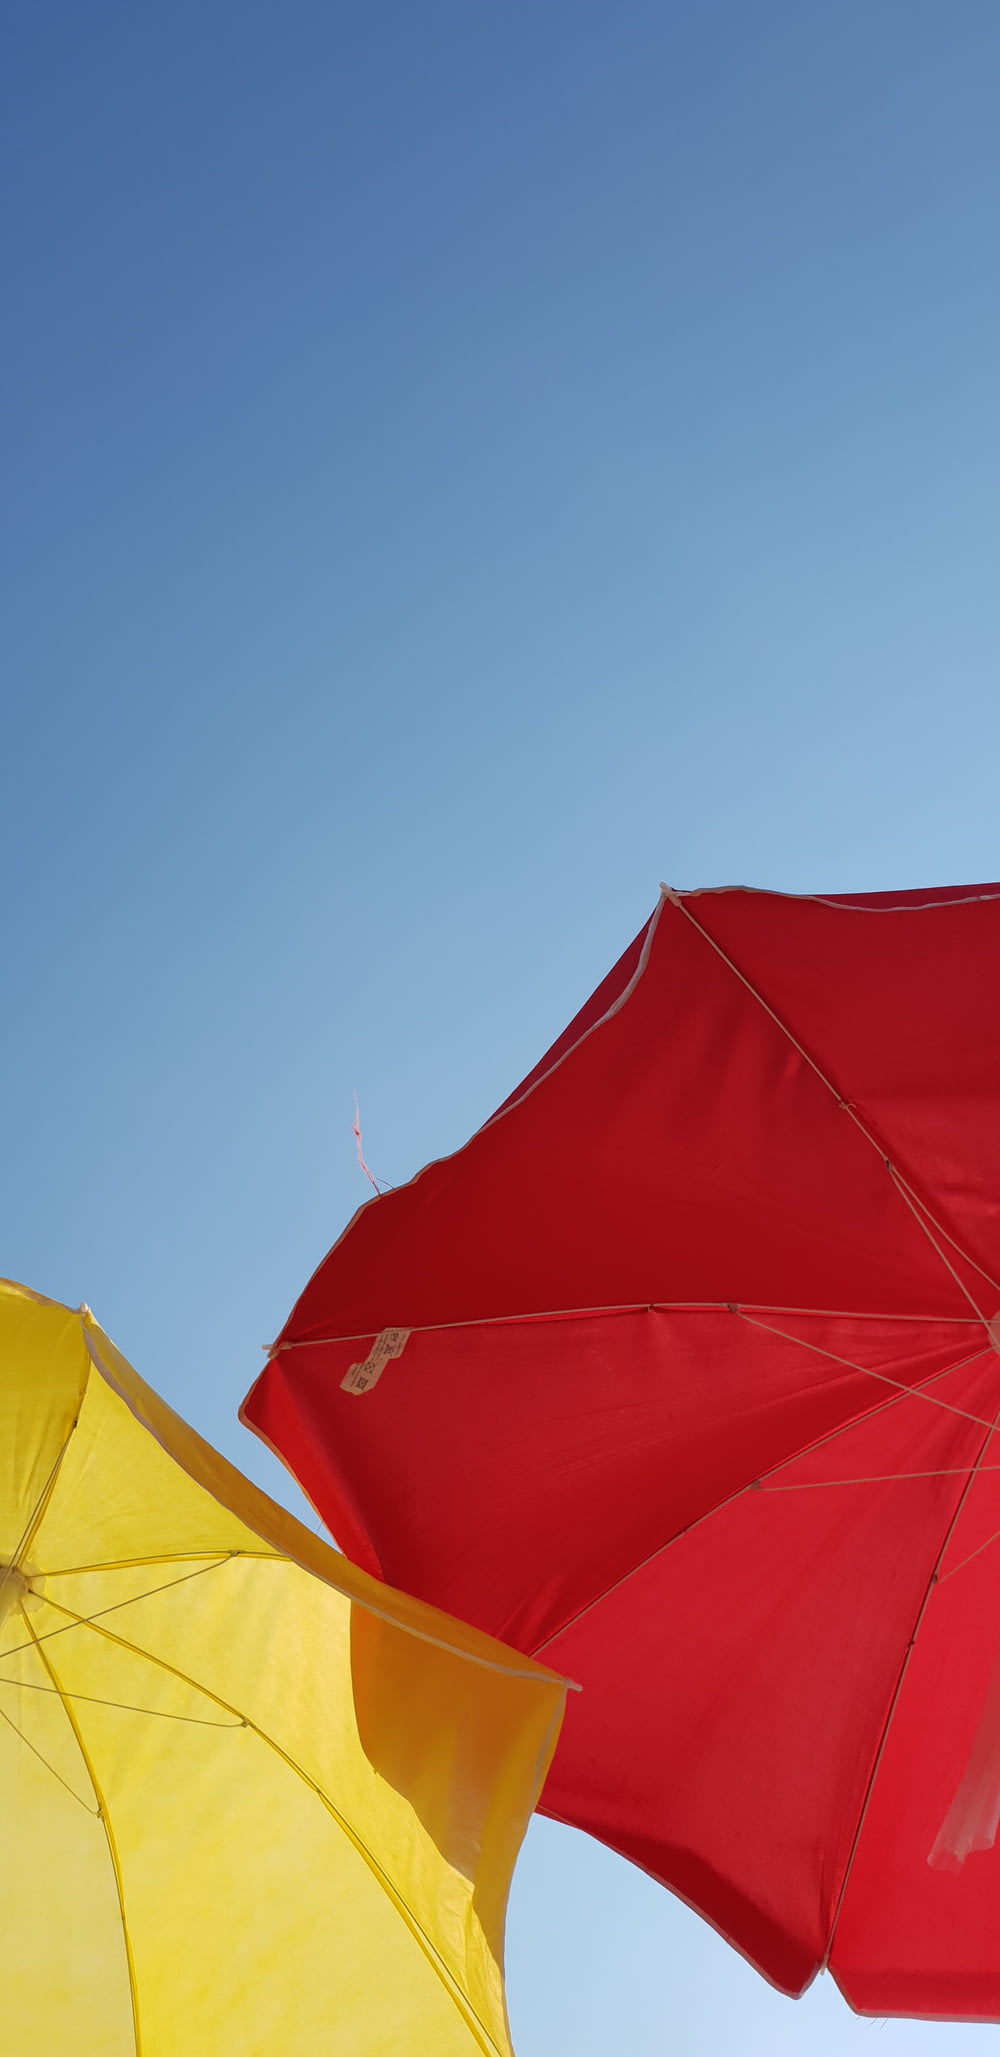 Photographie en contre-plongée de parapluie rouge